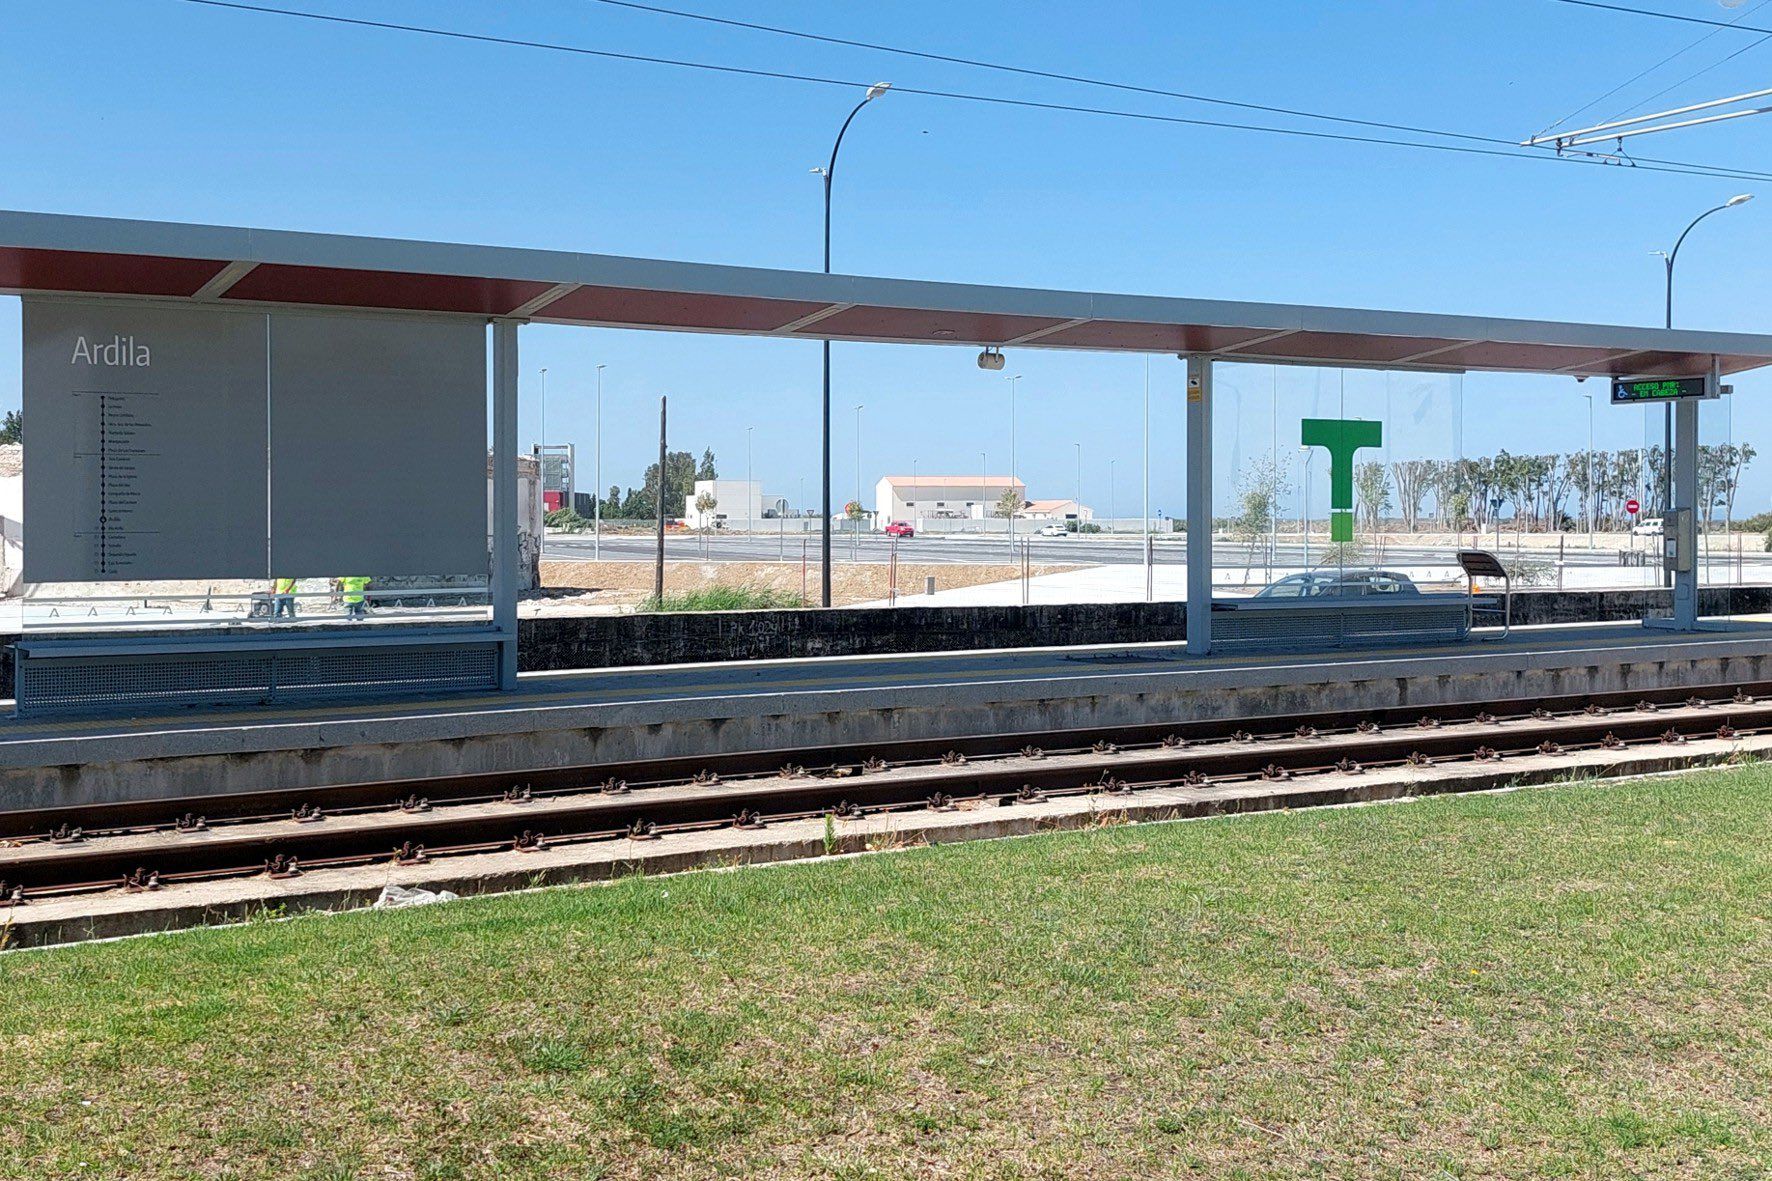 TramBahía, esta es la marca comercial y las 21 paradas del Tranvía de la Bahía de Cádiz. En la imagen, parada de la Ardila, en San Fernando.